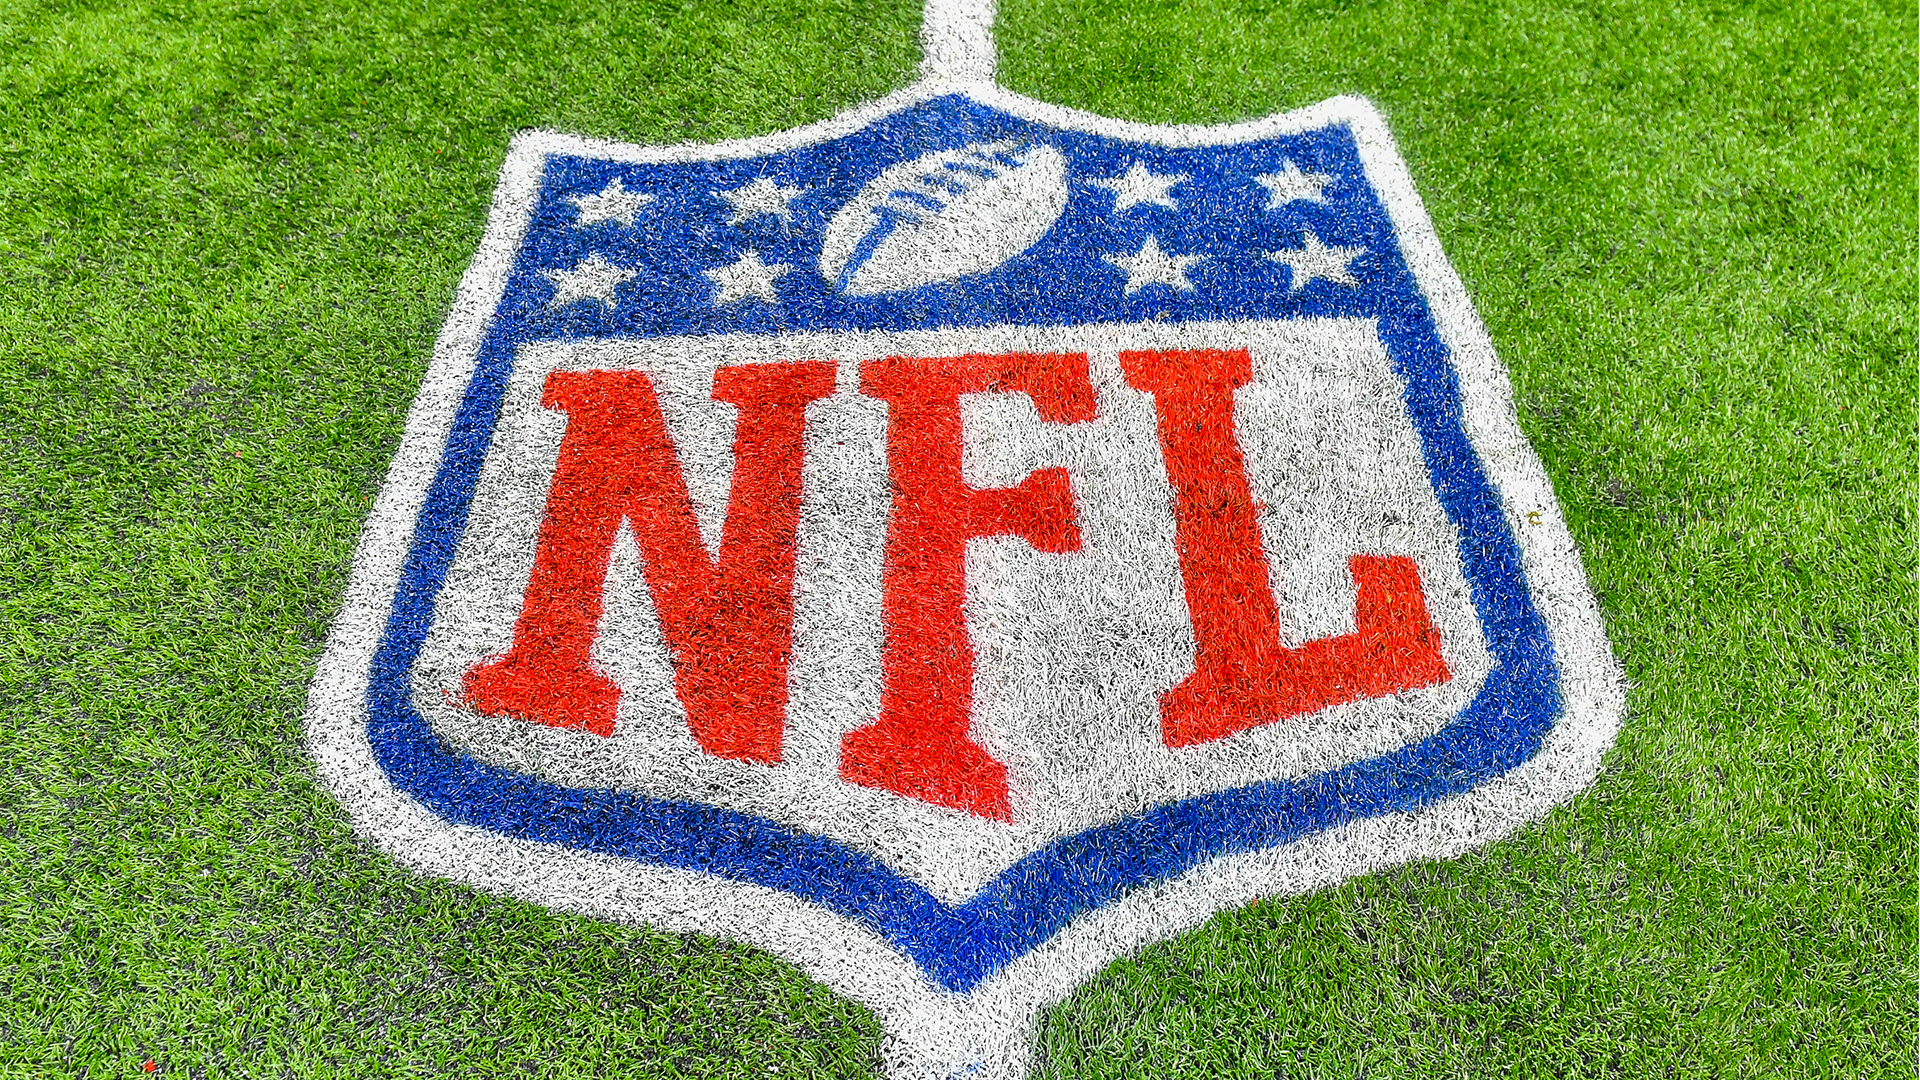 Steelers, Eagles in top 10 most in-demand NFL teams on StubHub 